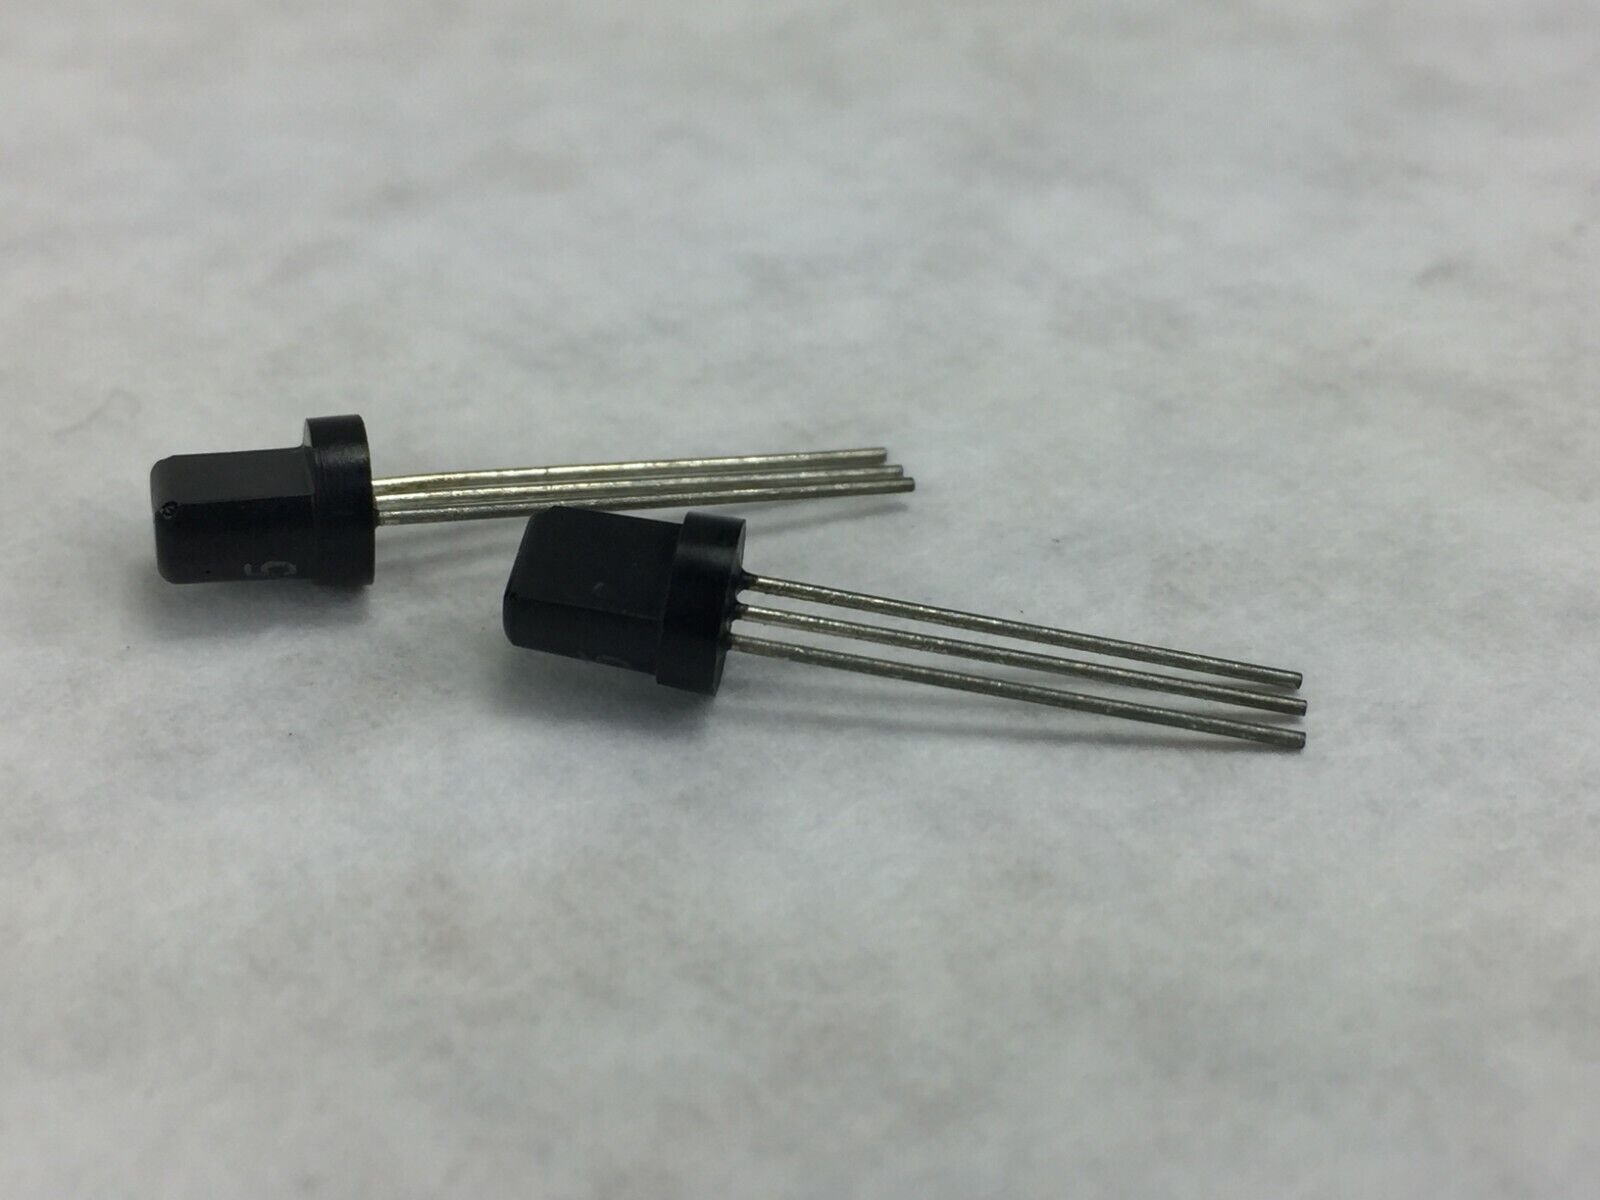 2N5365 PNP Transistor T0-92  Lot of 25